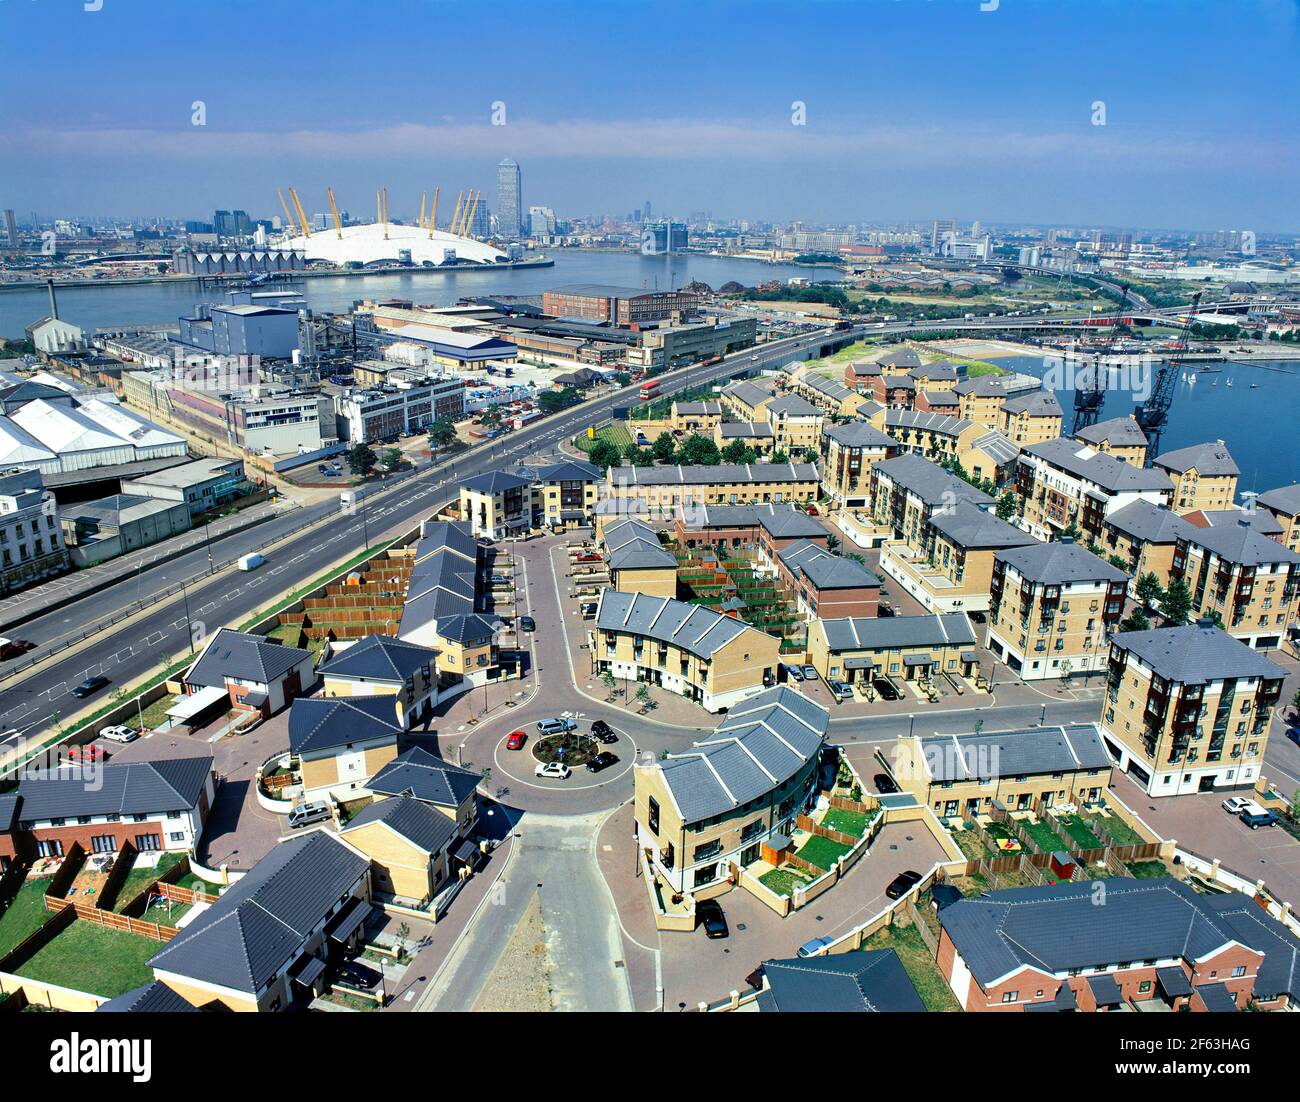 Teil des Londoner Docklands-Umbaugebiets mit Britannia Village im Vordergrund und dem Millenium Dome an der Themse. Stockfoto